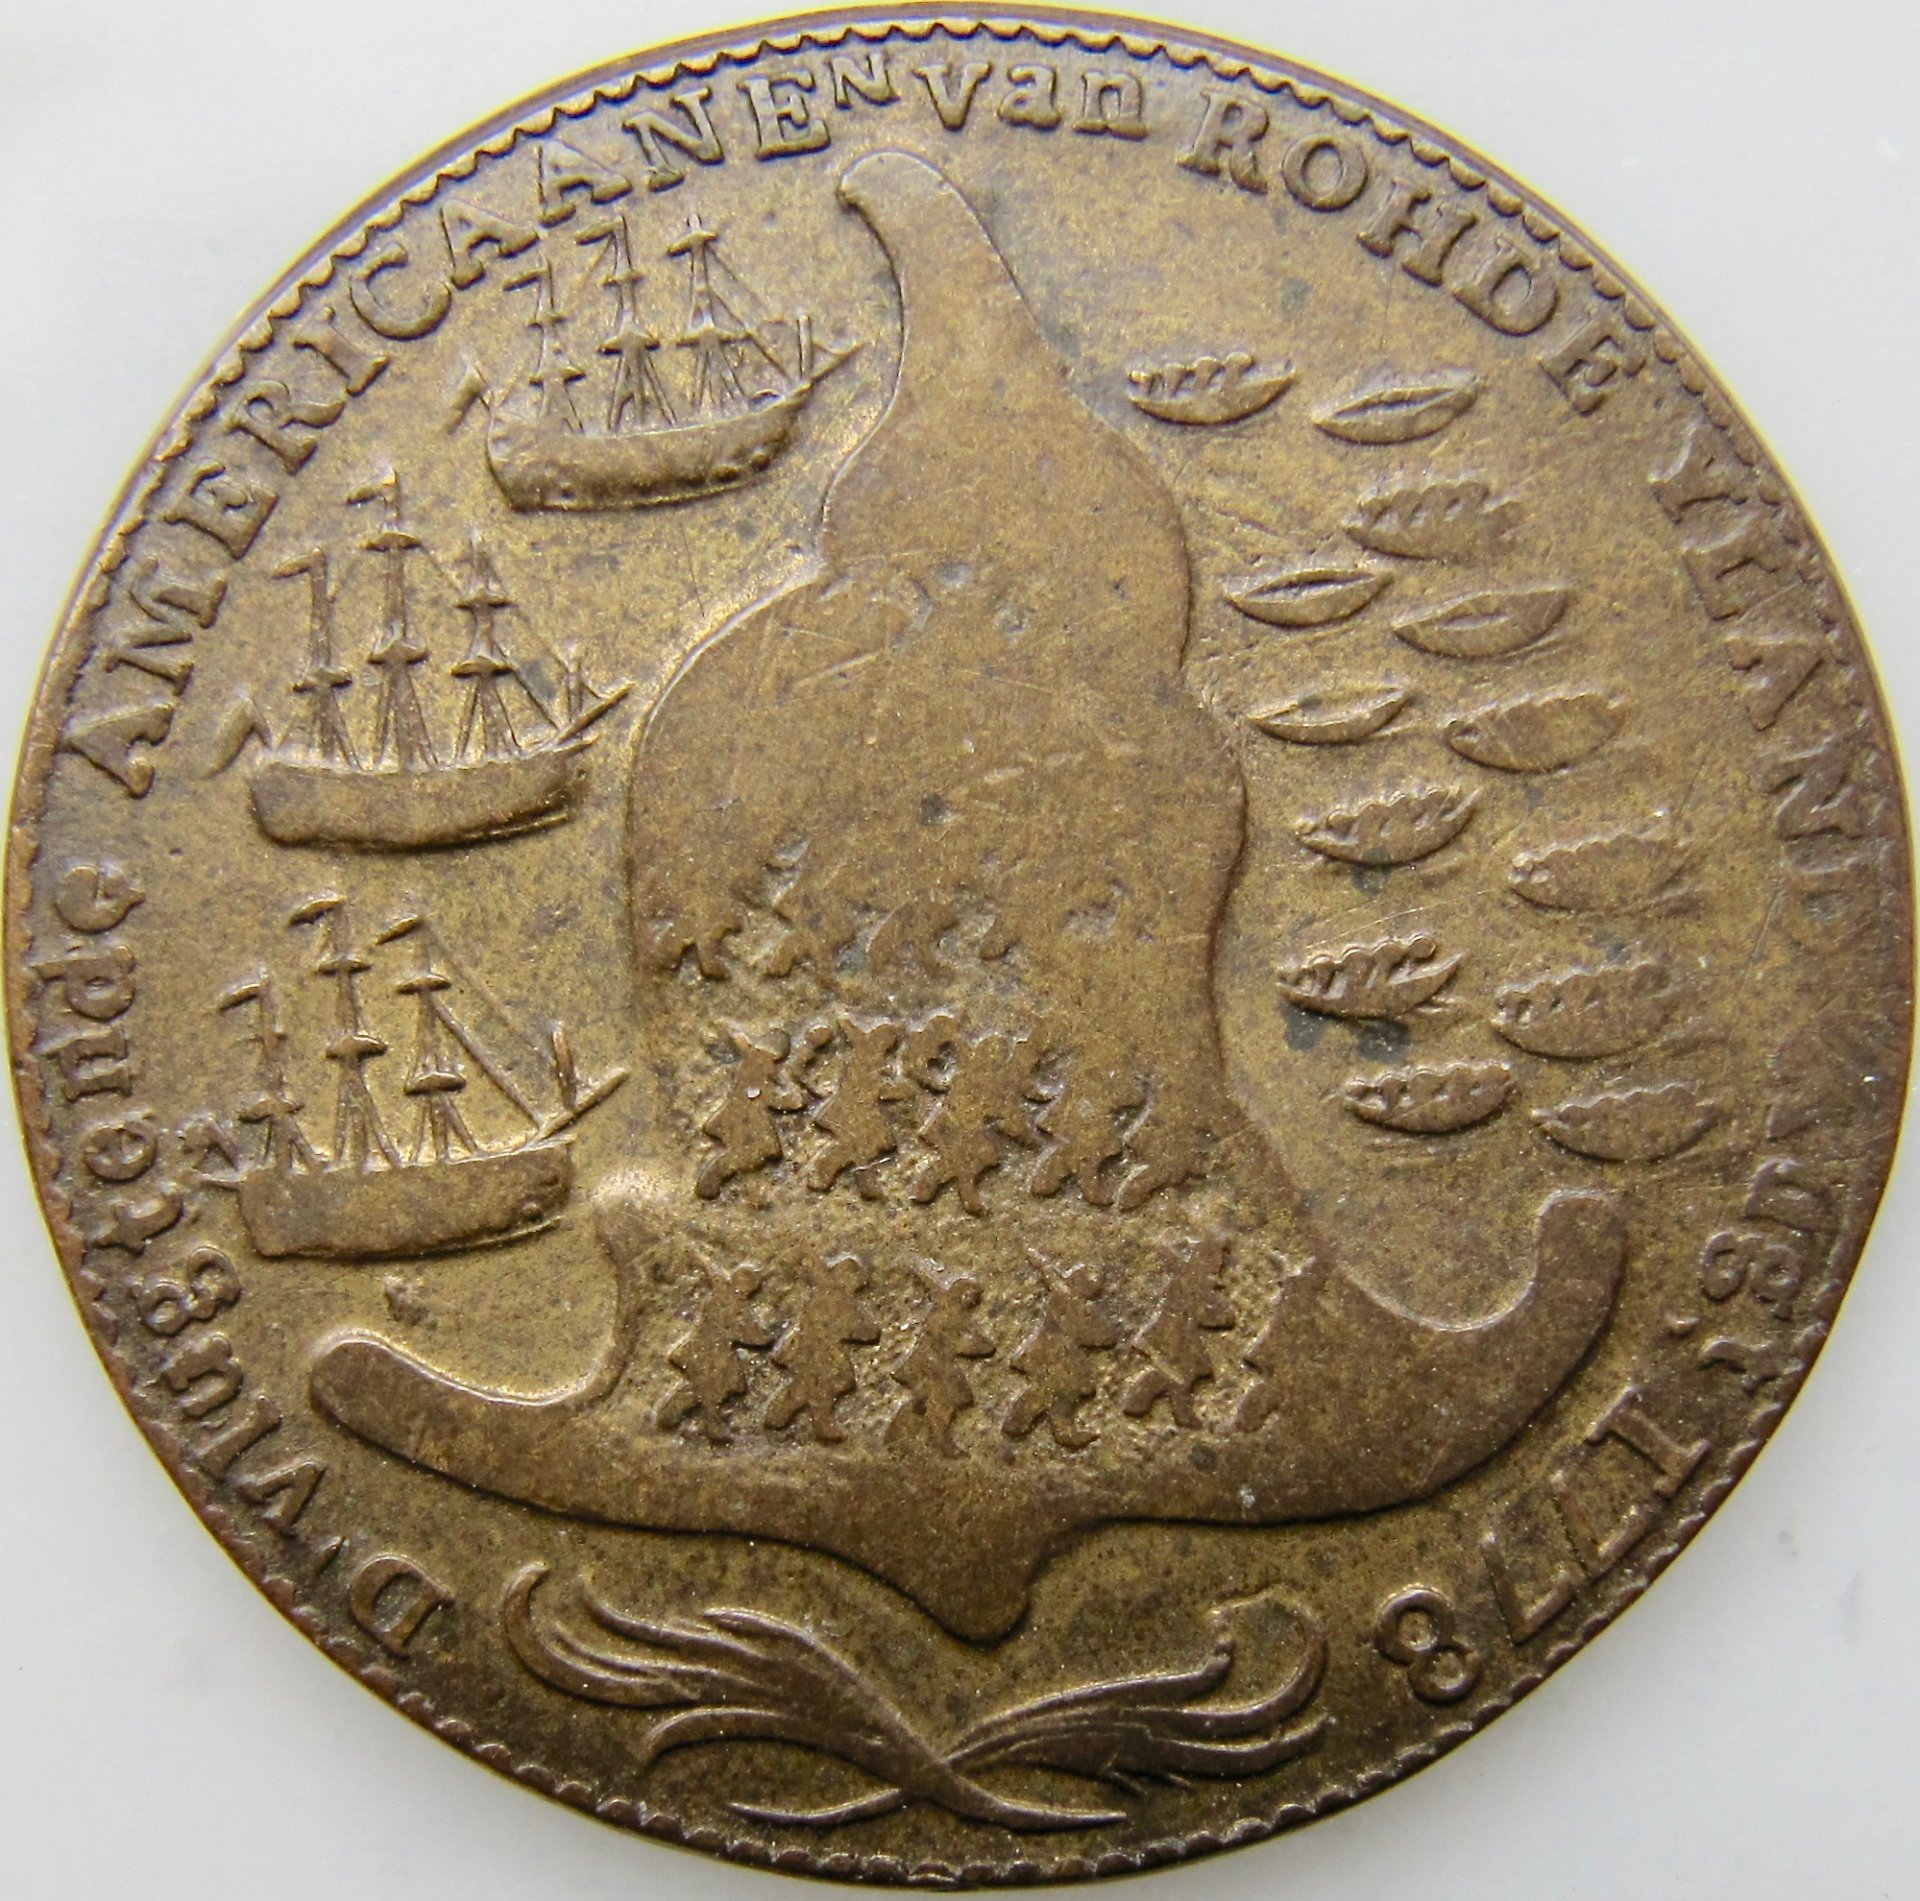 Rhode island ship toke 1779 - REV - GP - lighter better - 1.jpg